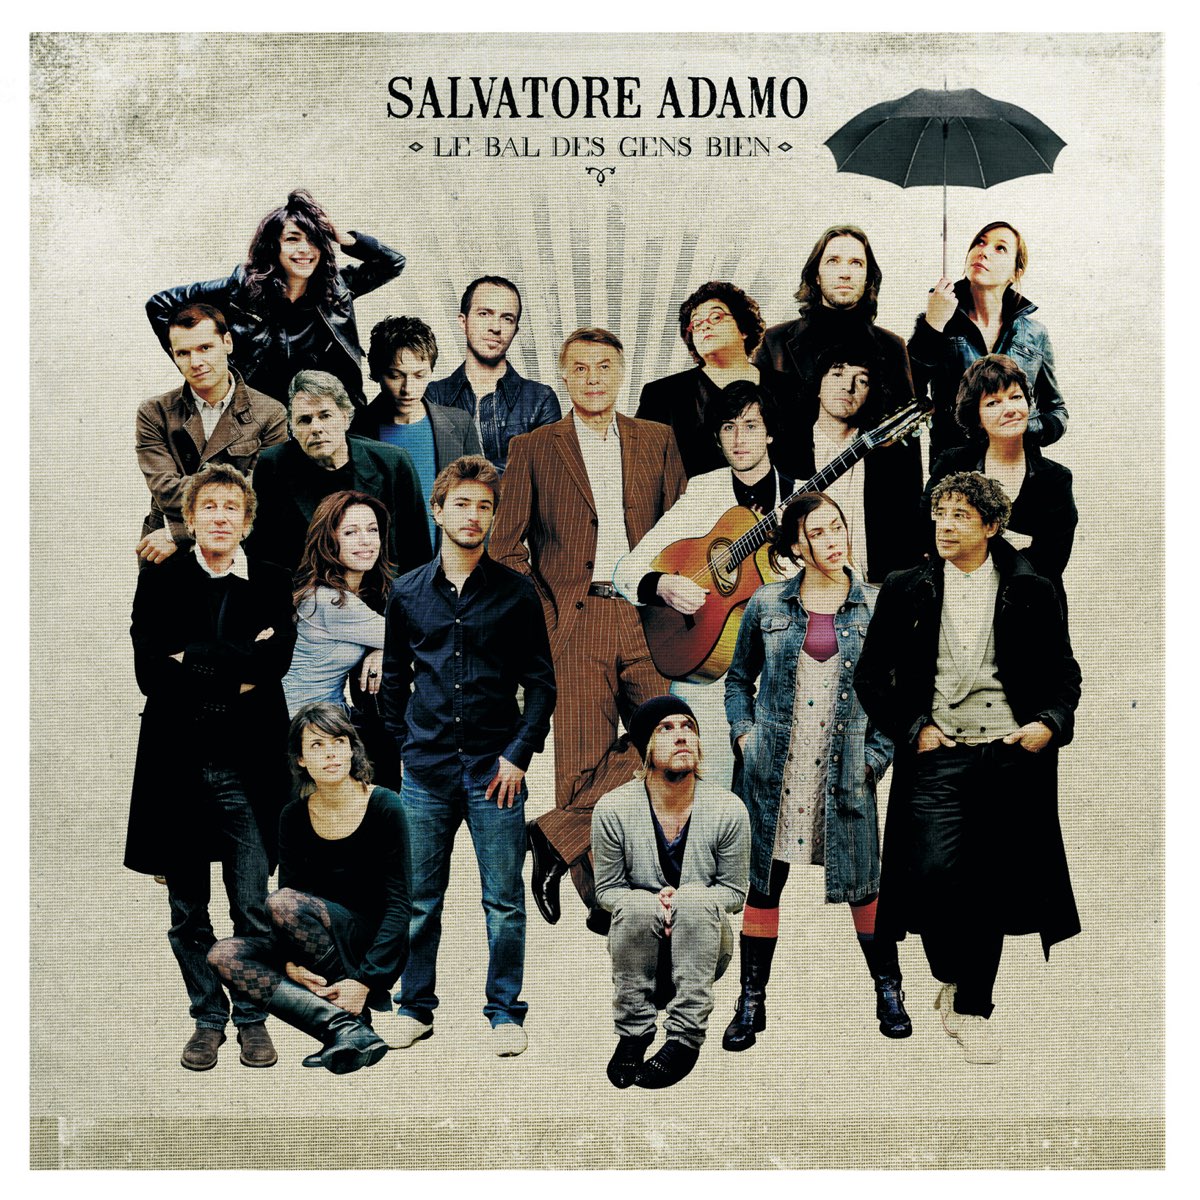 Le bal des gens bien - Album by Salvatore Adamo - Apple Music